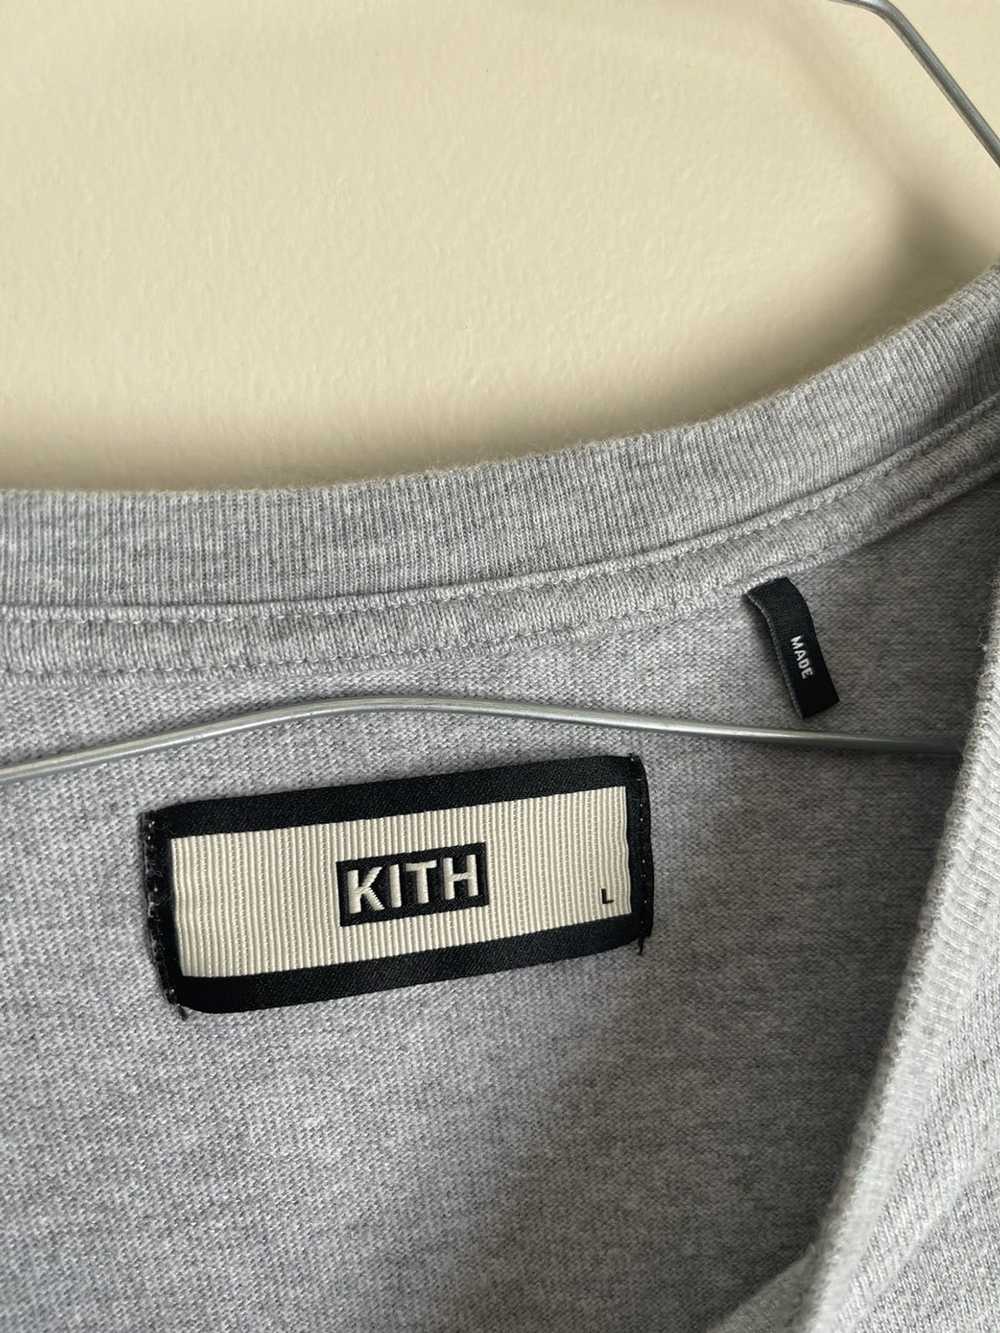 Kith Kith Box Logo Grey Size Large - image 4